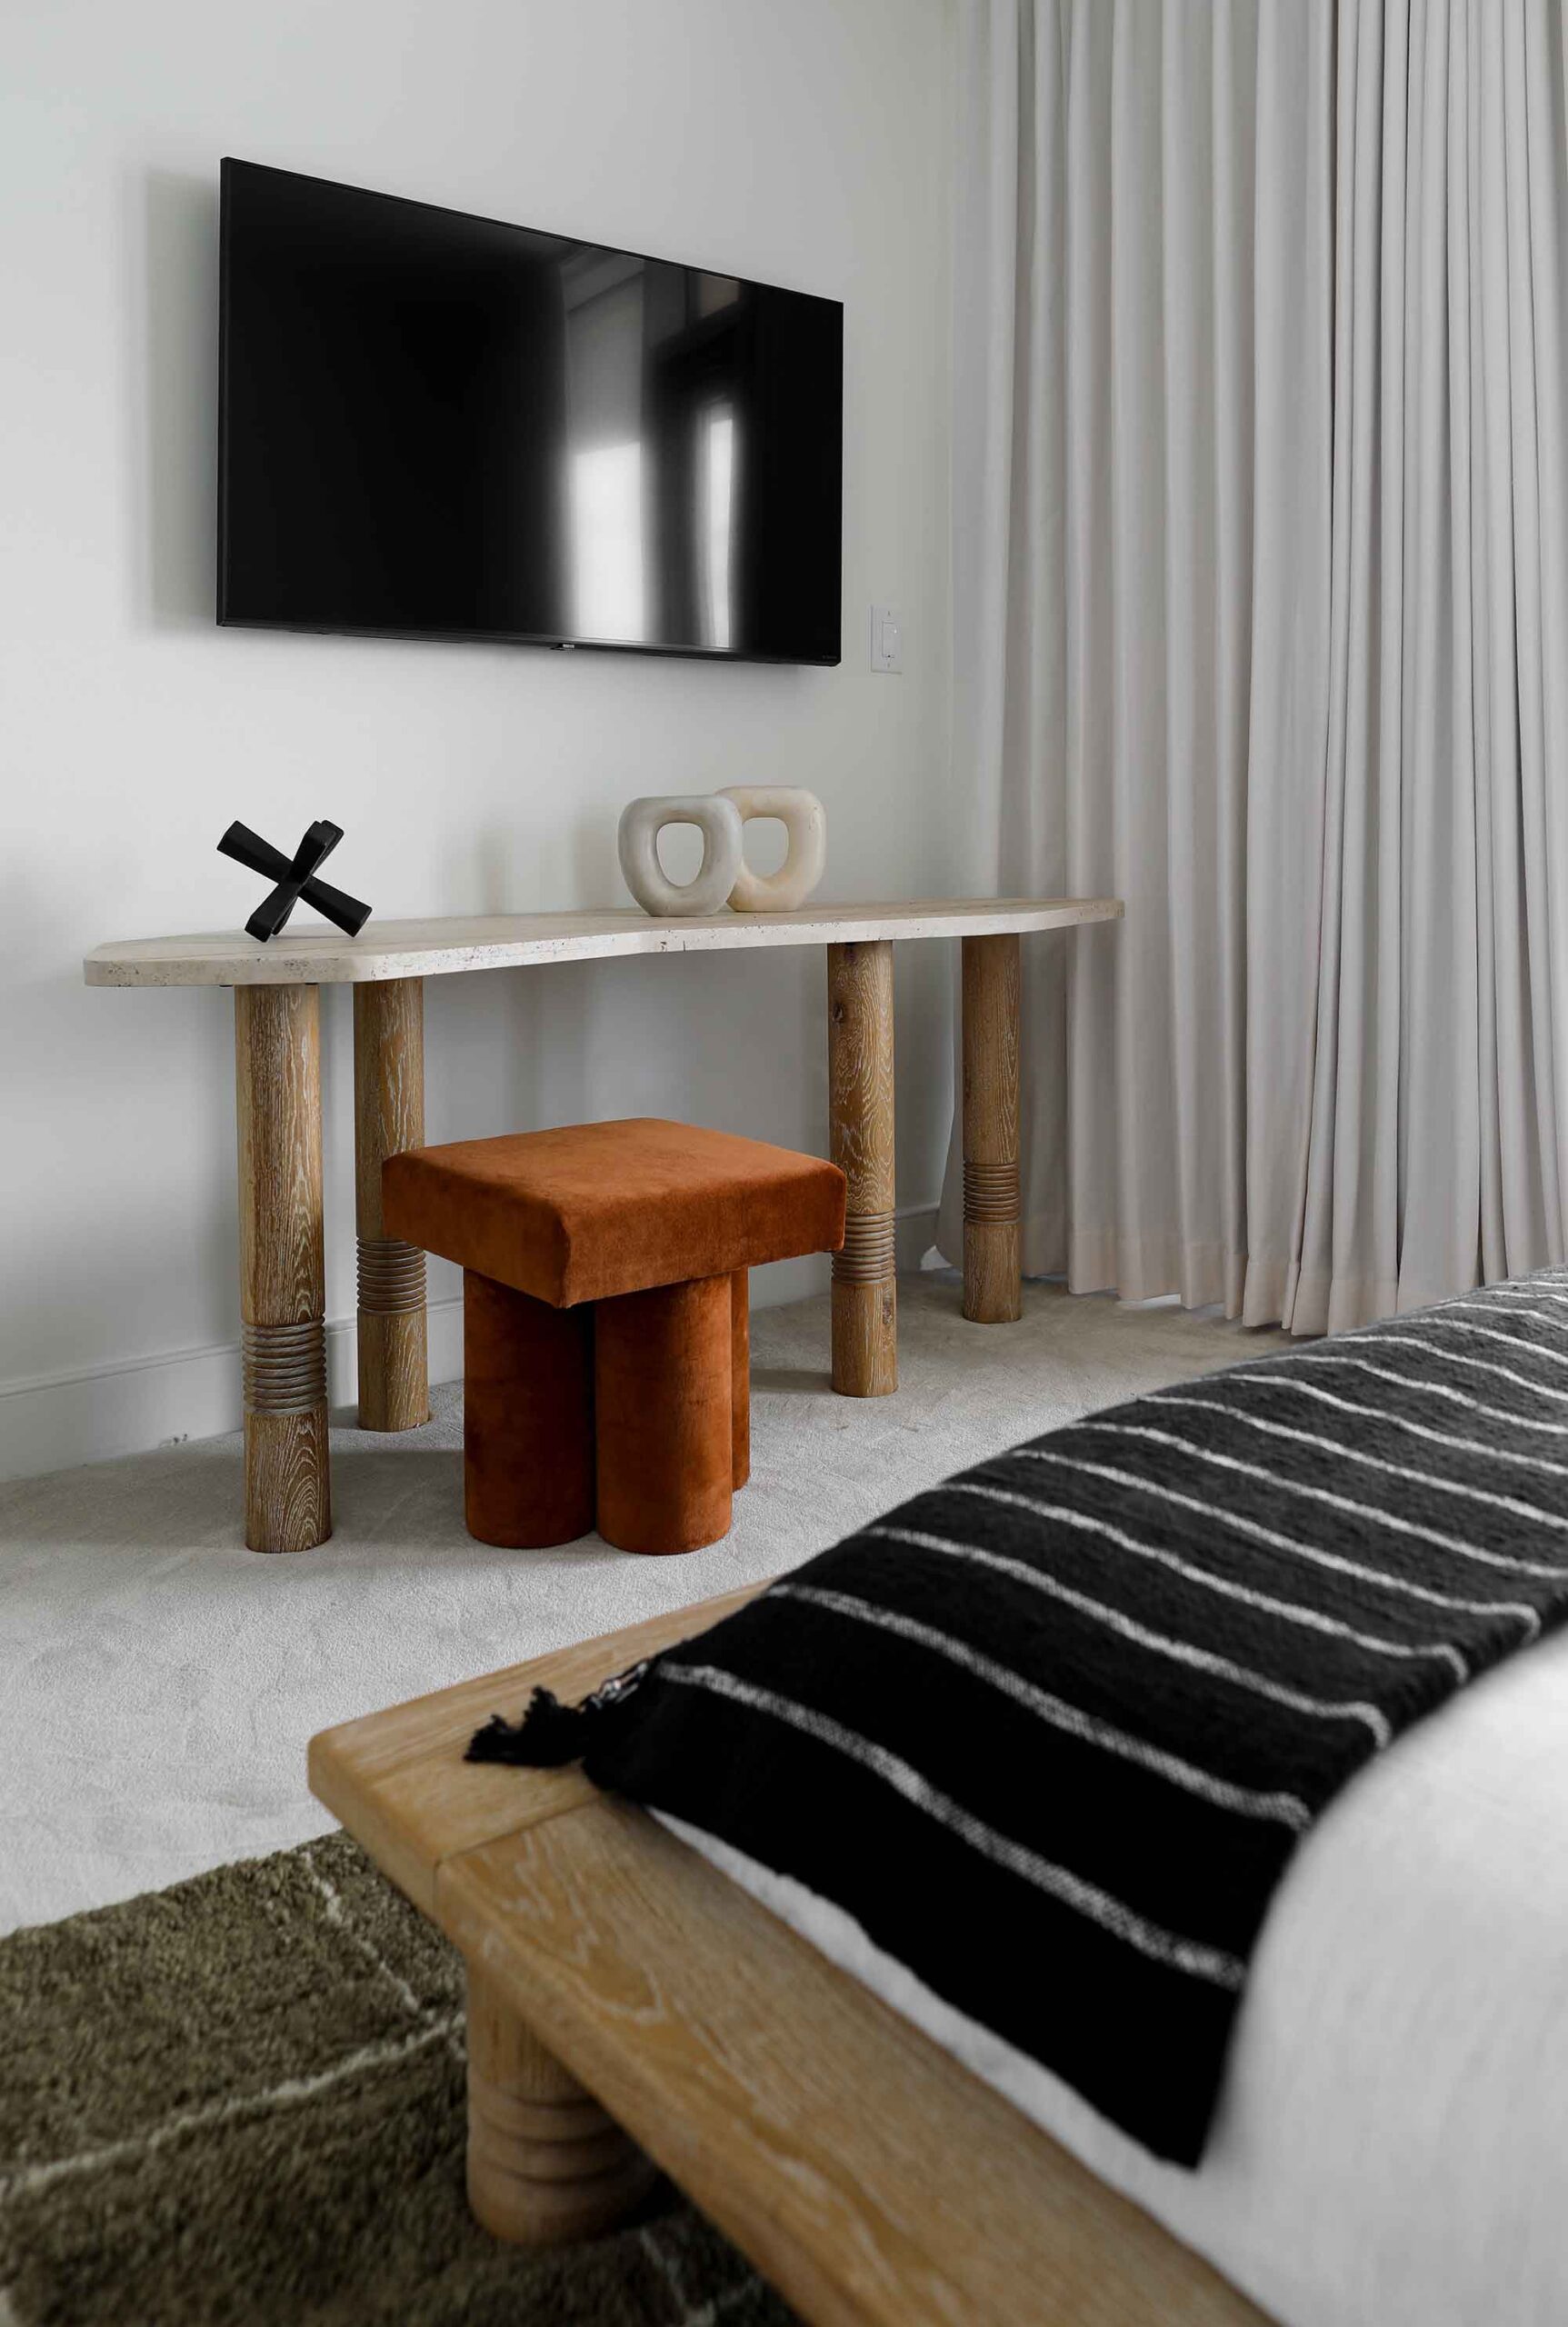 guest bedroom design by interior designer Patchi Cancado